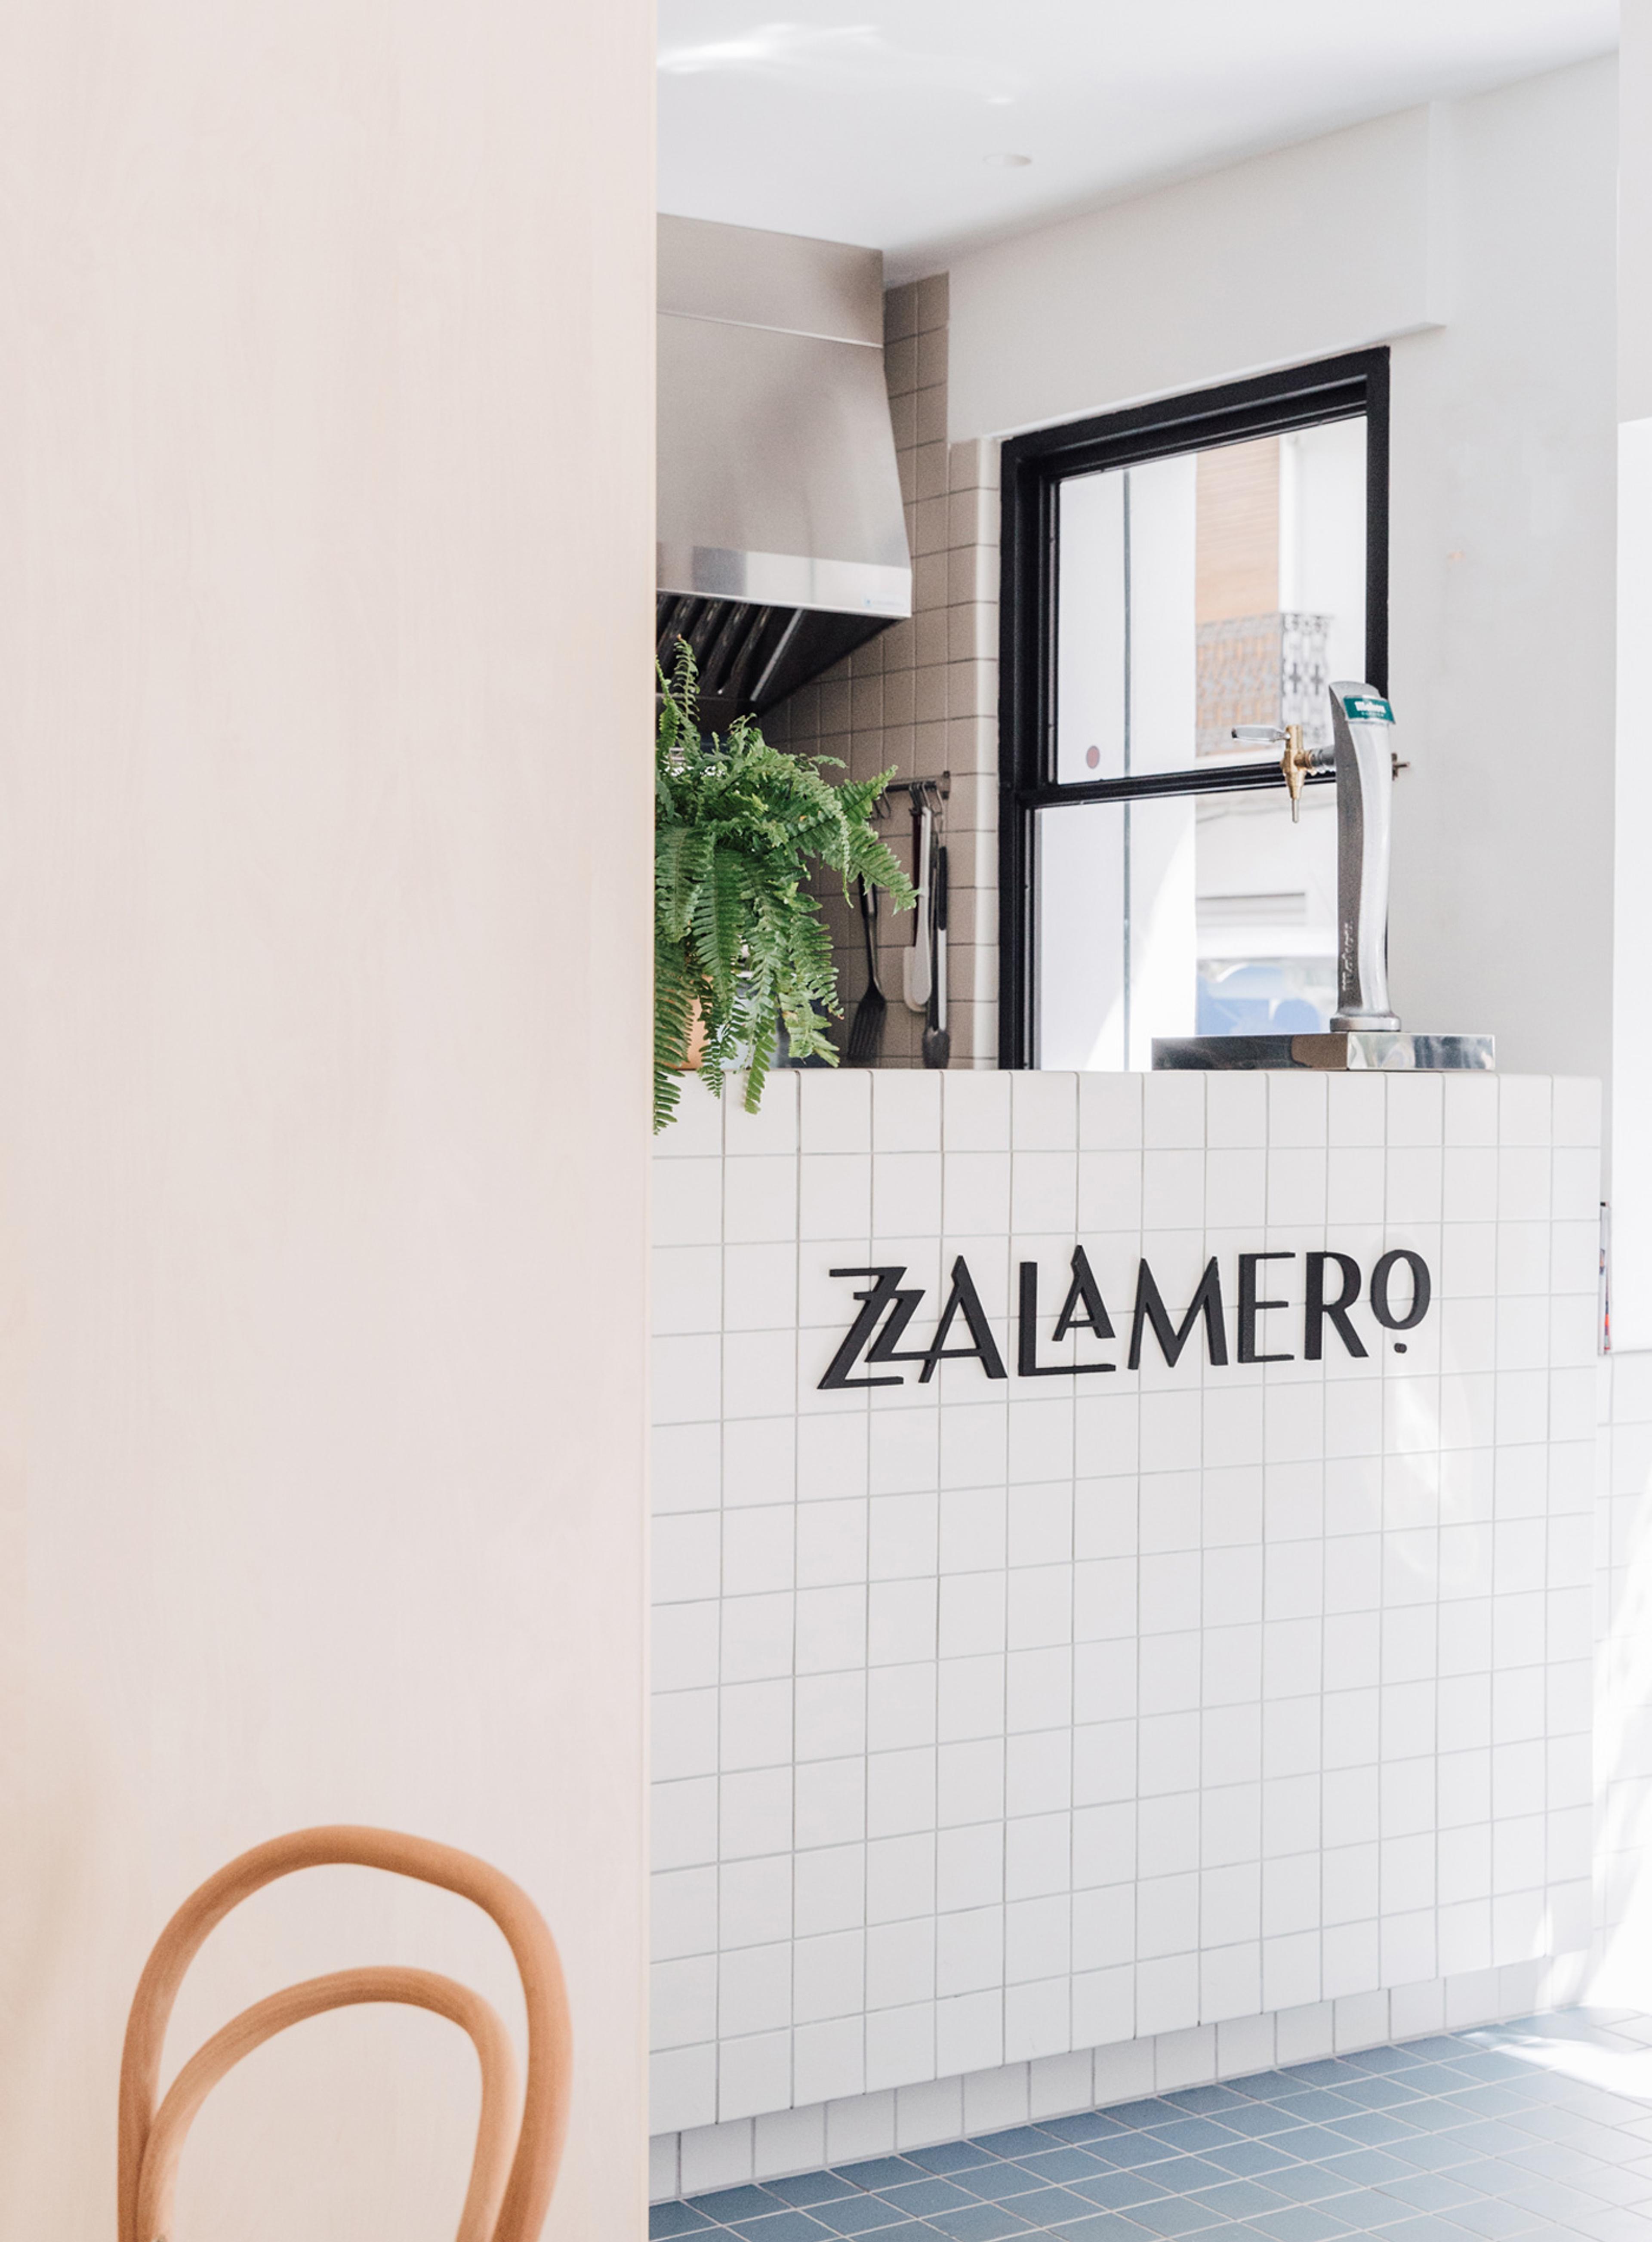 Zalamero by Blavet Studio